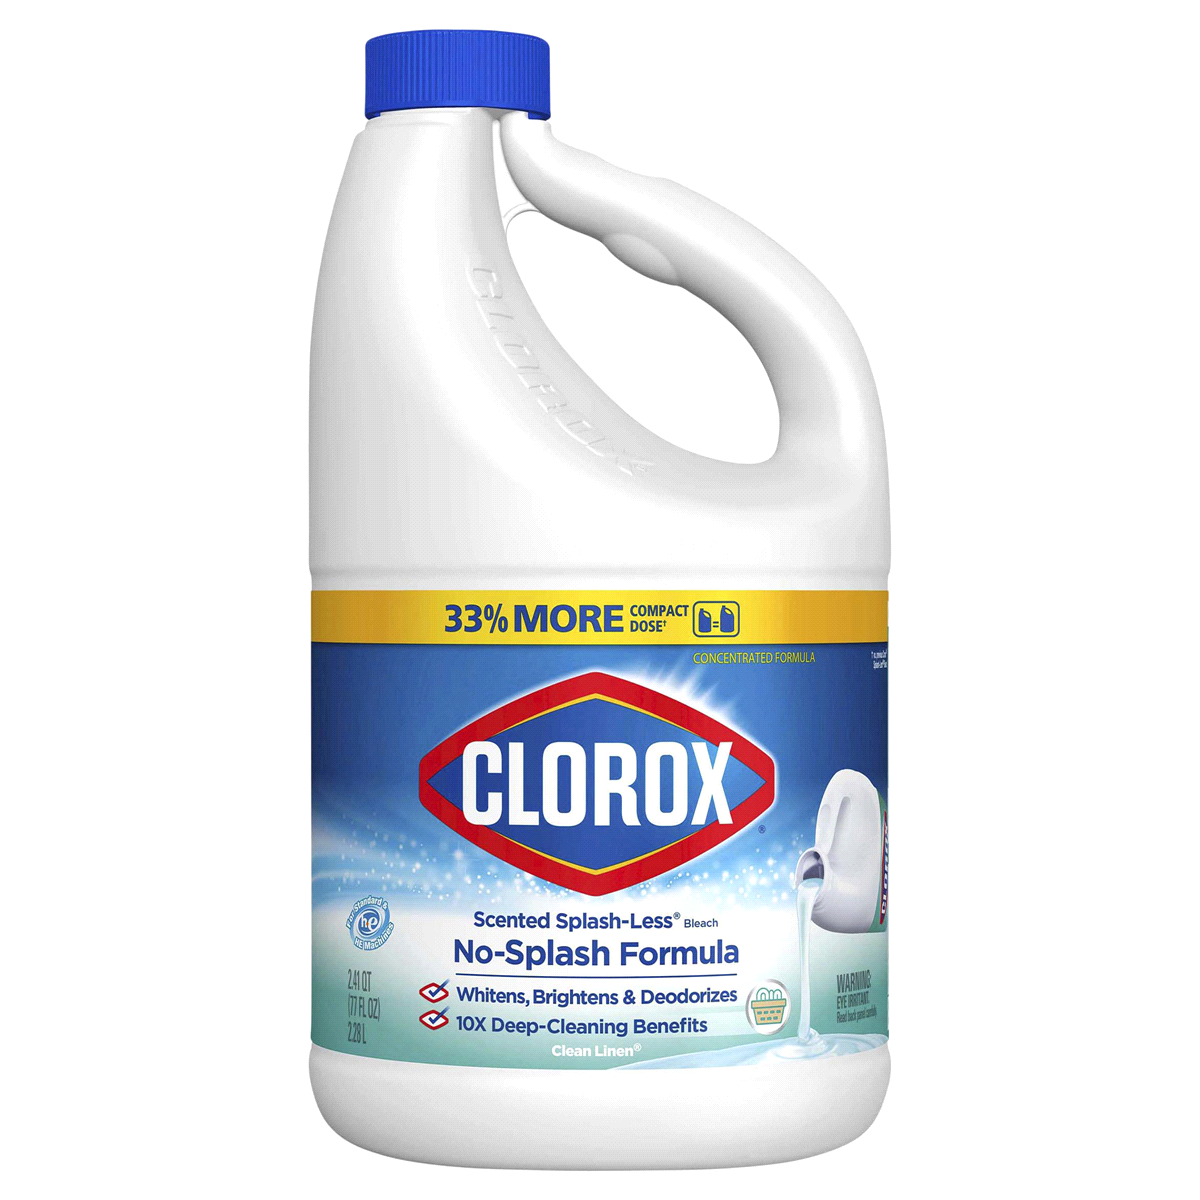 Clorox Bleach Liquid Splash-less Clean Linen Concentrated - 77oz/6pk